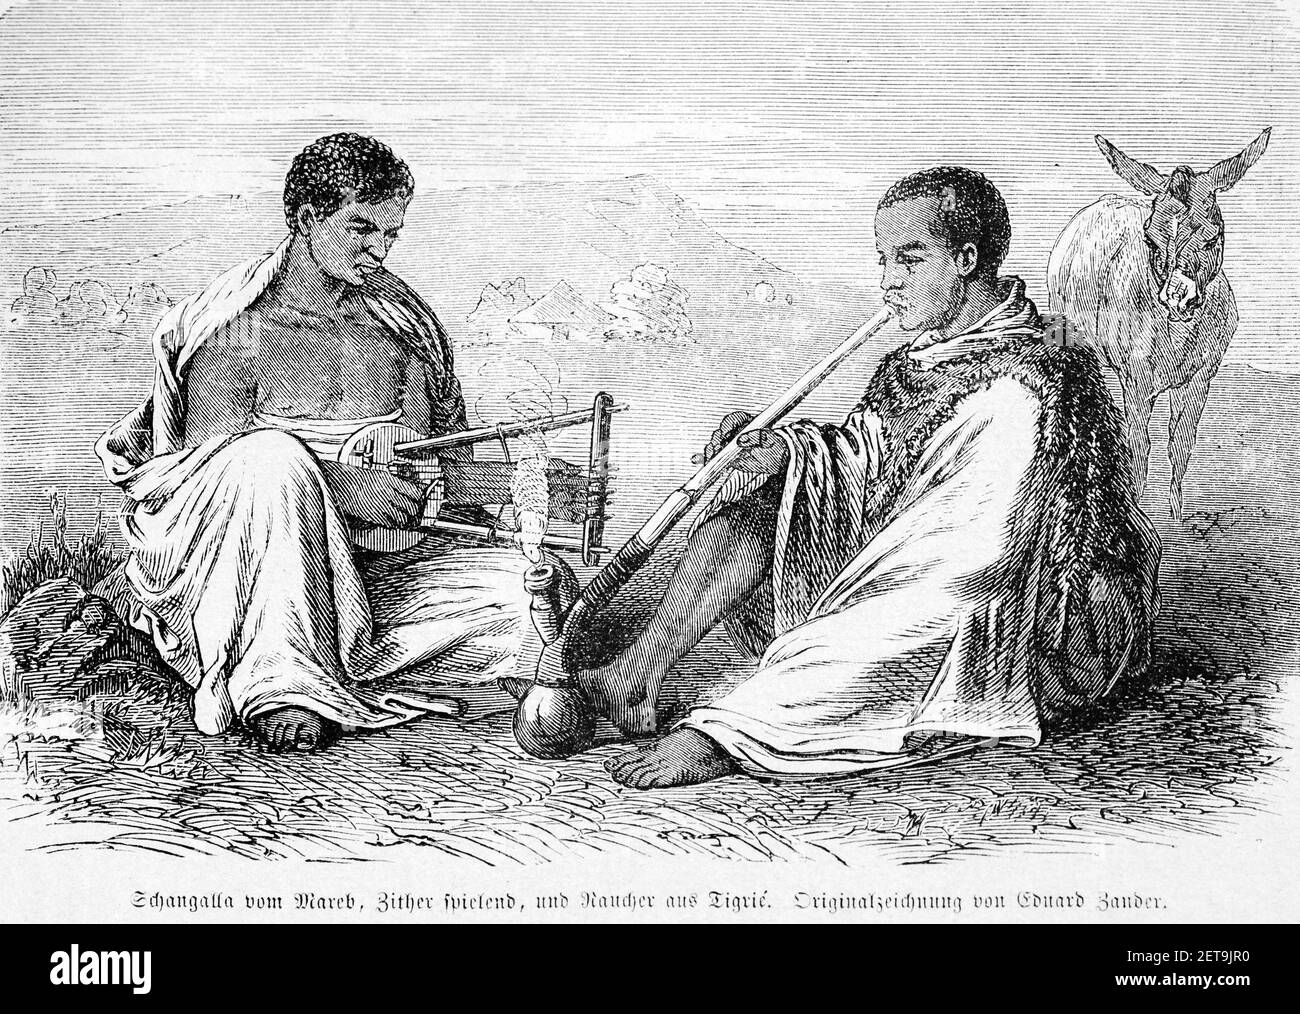 Schangalla de Mareb jouant le cithare et un fumeur de Tigray, Abyssina, Ethiopie, Afrique de l'est, R.Angree, Abessinien, Land und Volk, Leipzig 1869 Banque D'Images